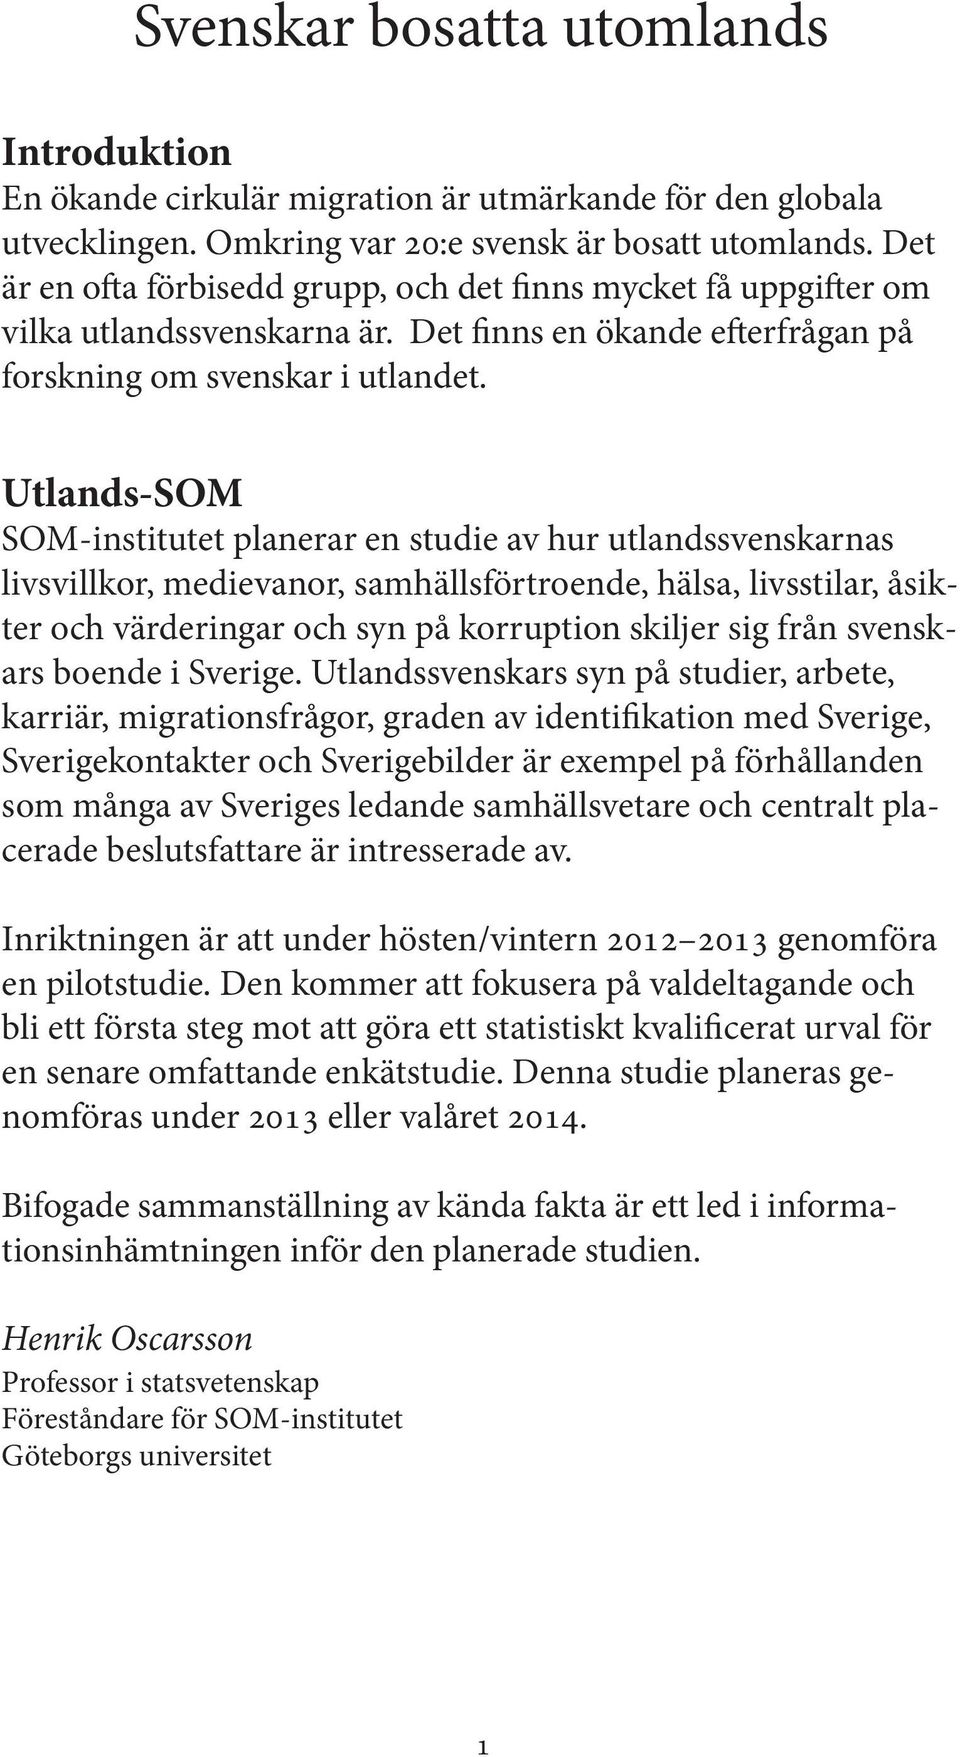 Utlands-SOM SOM-institutet planerar en studie av hur utlandssvenskarnas livsvillkor, medievanor, samhällsförtroende, hälsa, livsstilar, åsikter och värderingar och syn på korruption skiljer sig från